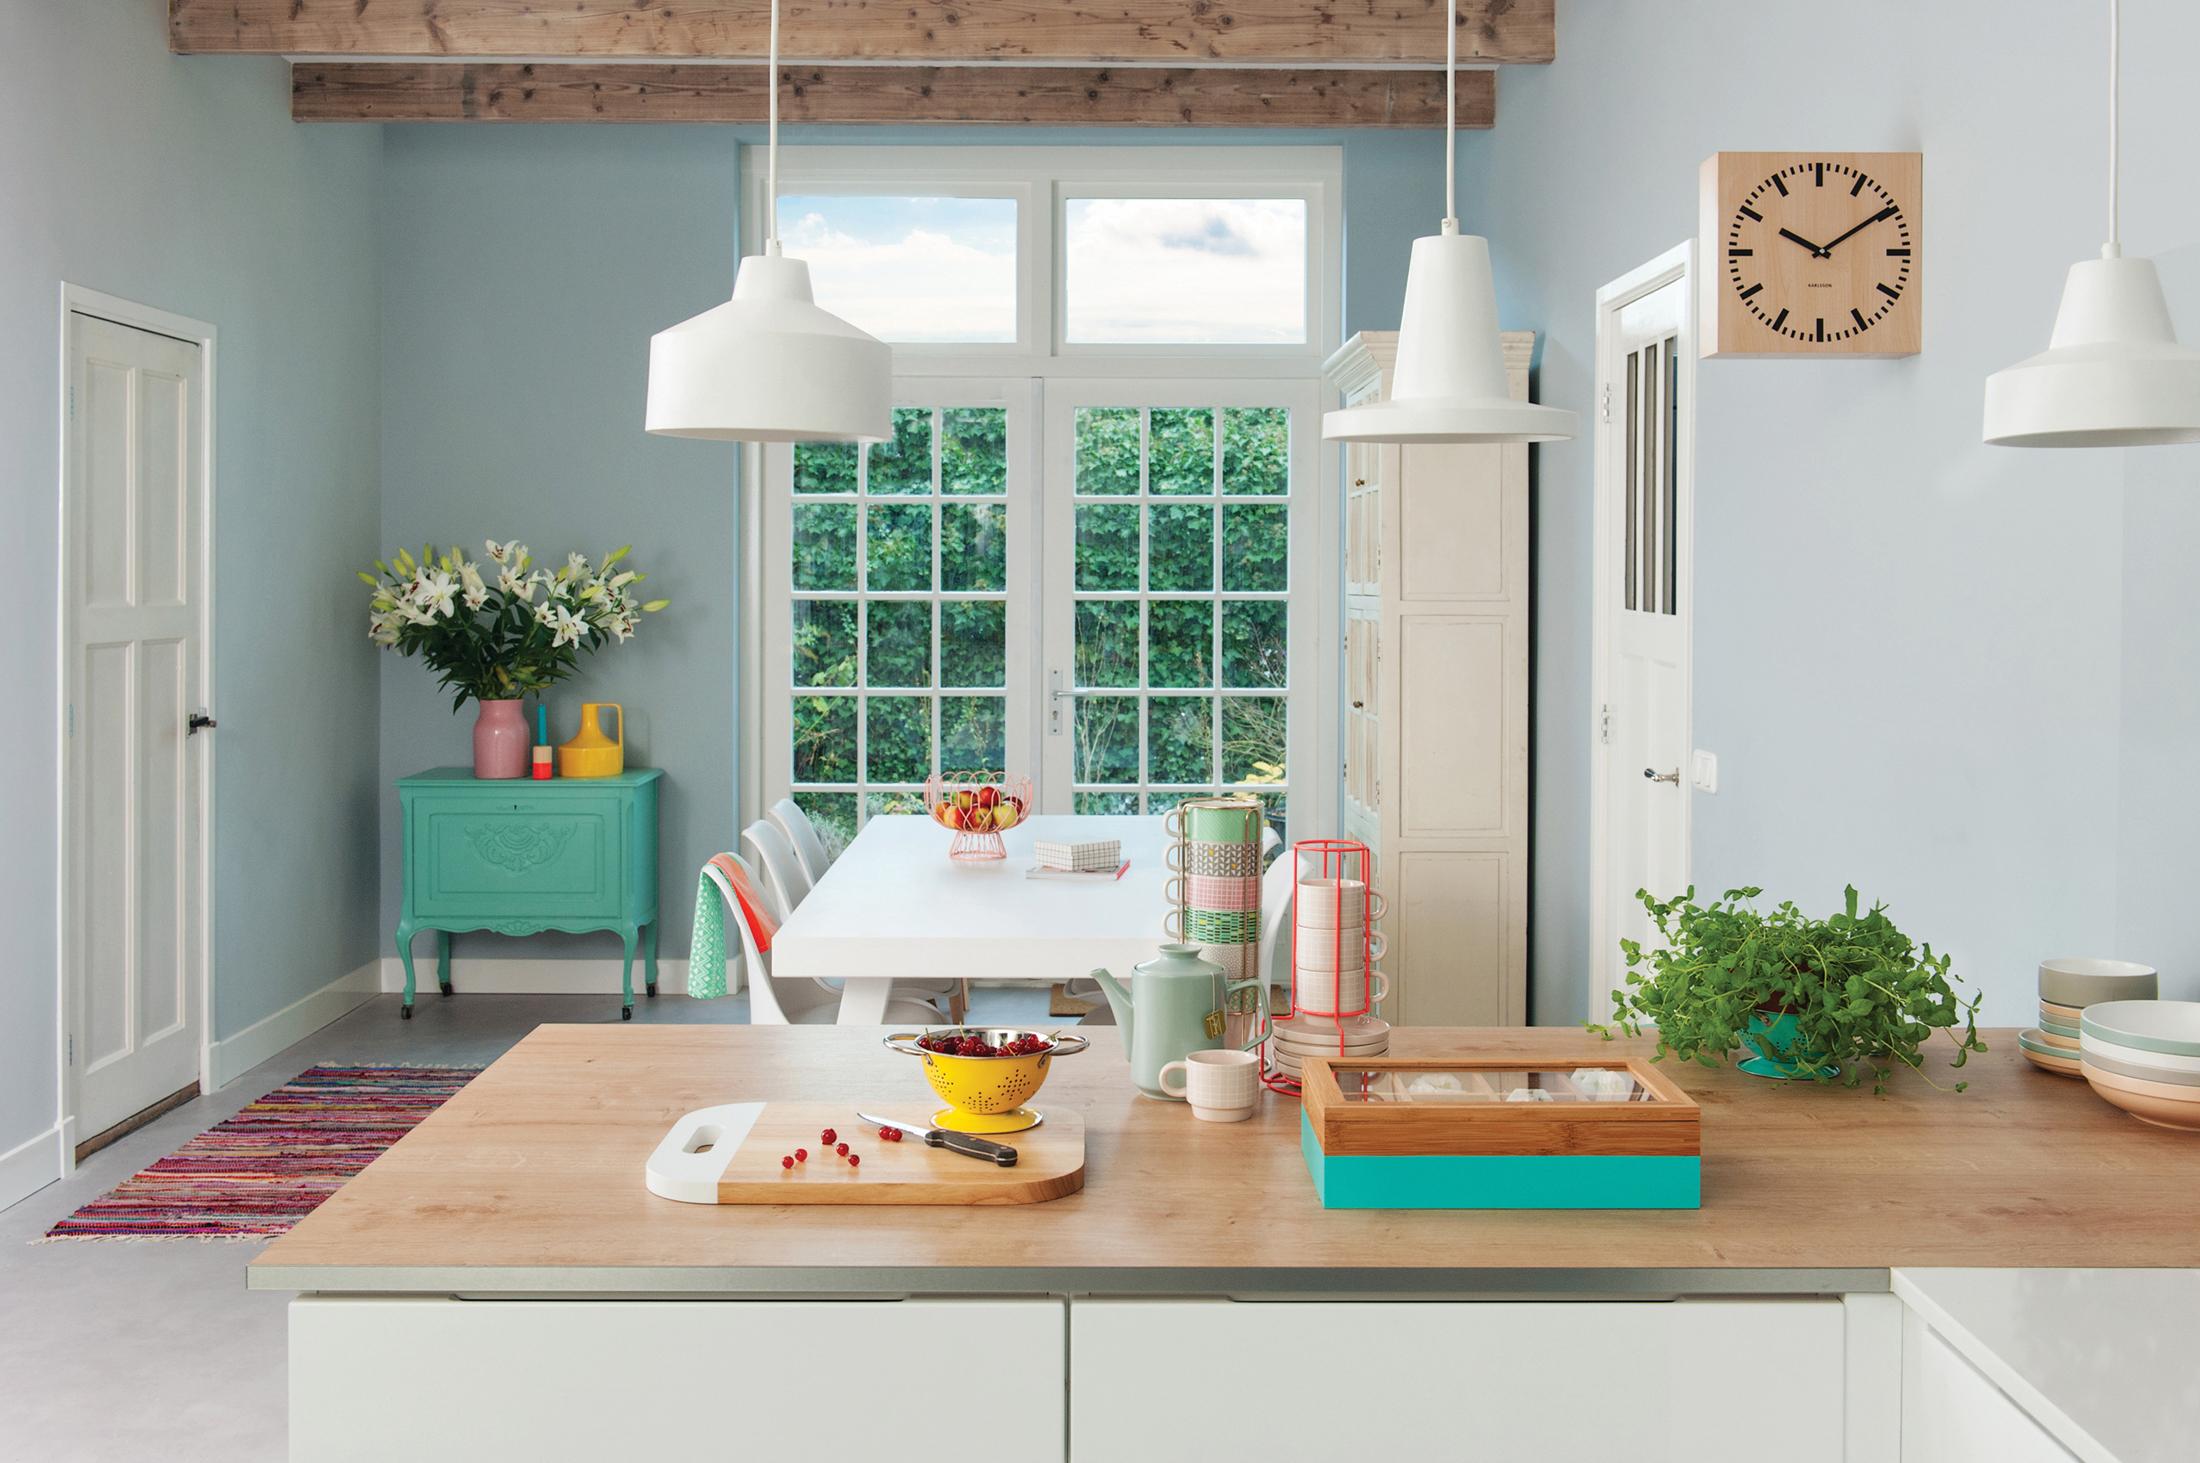 Küche in hellen gedeckten Farben #wandfarbe #arbeitsplatte #kommode #deckenbalken #wanddeko #wanduhr #küchentresen #weißerküchenschrank #hellblauewandfarbe ©Present Time